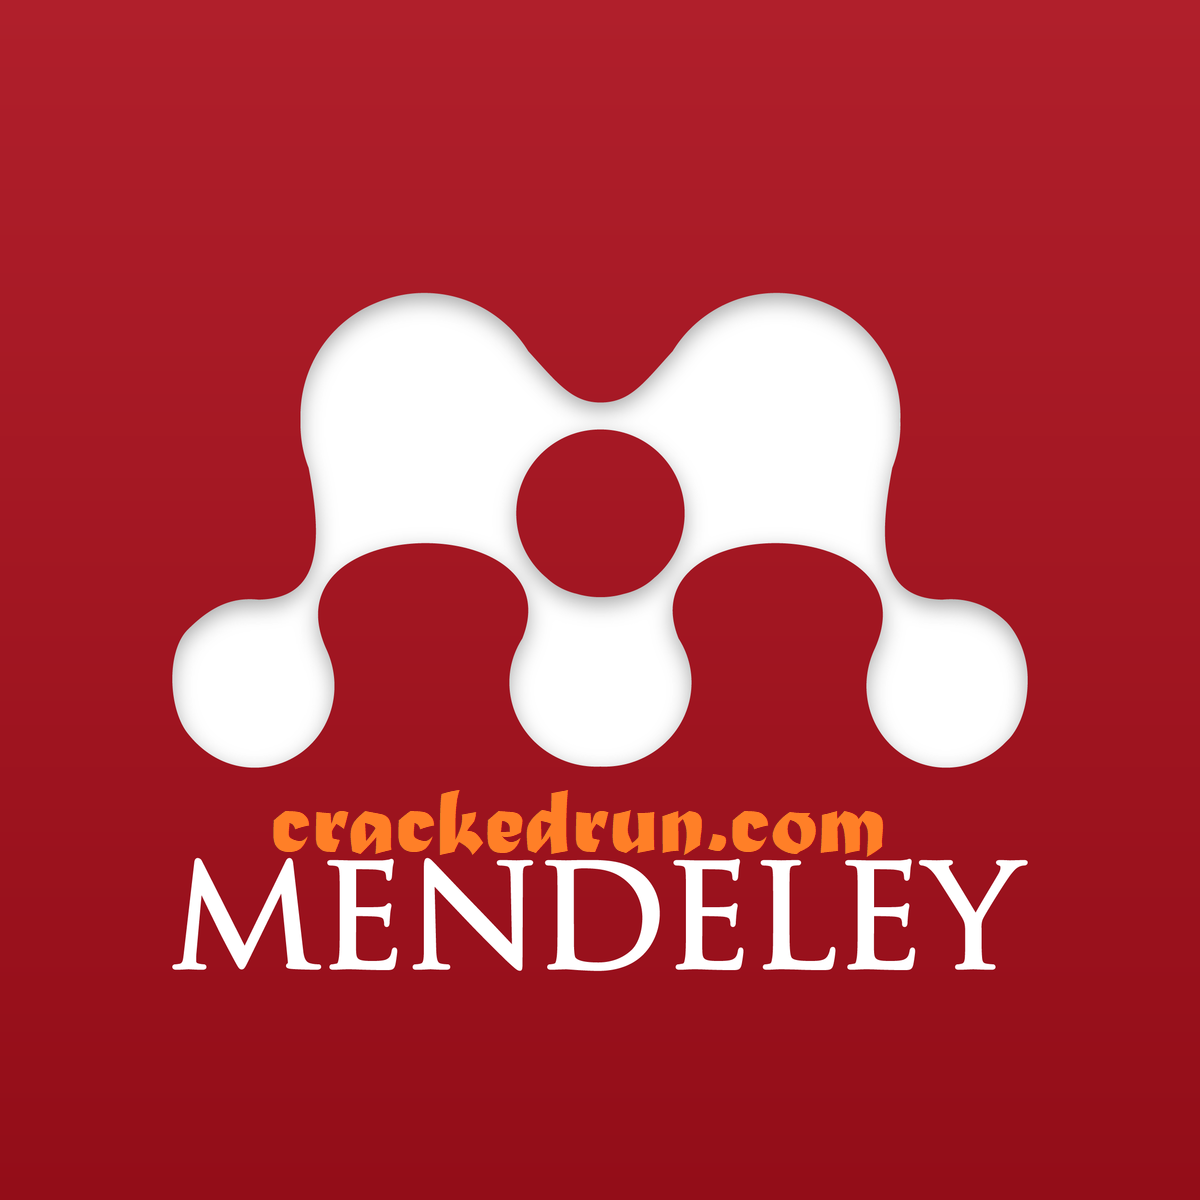 Mendeley Crack 2.61.0 License Key 2022 Free Download